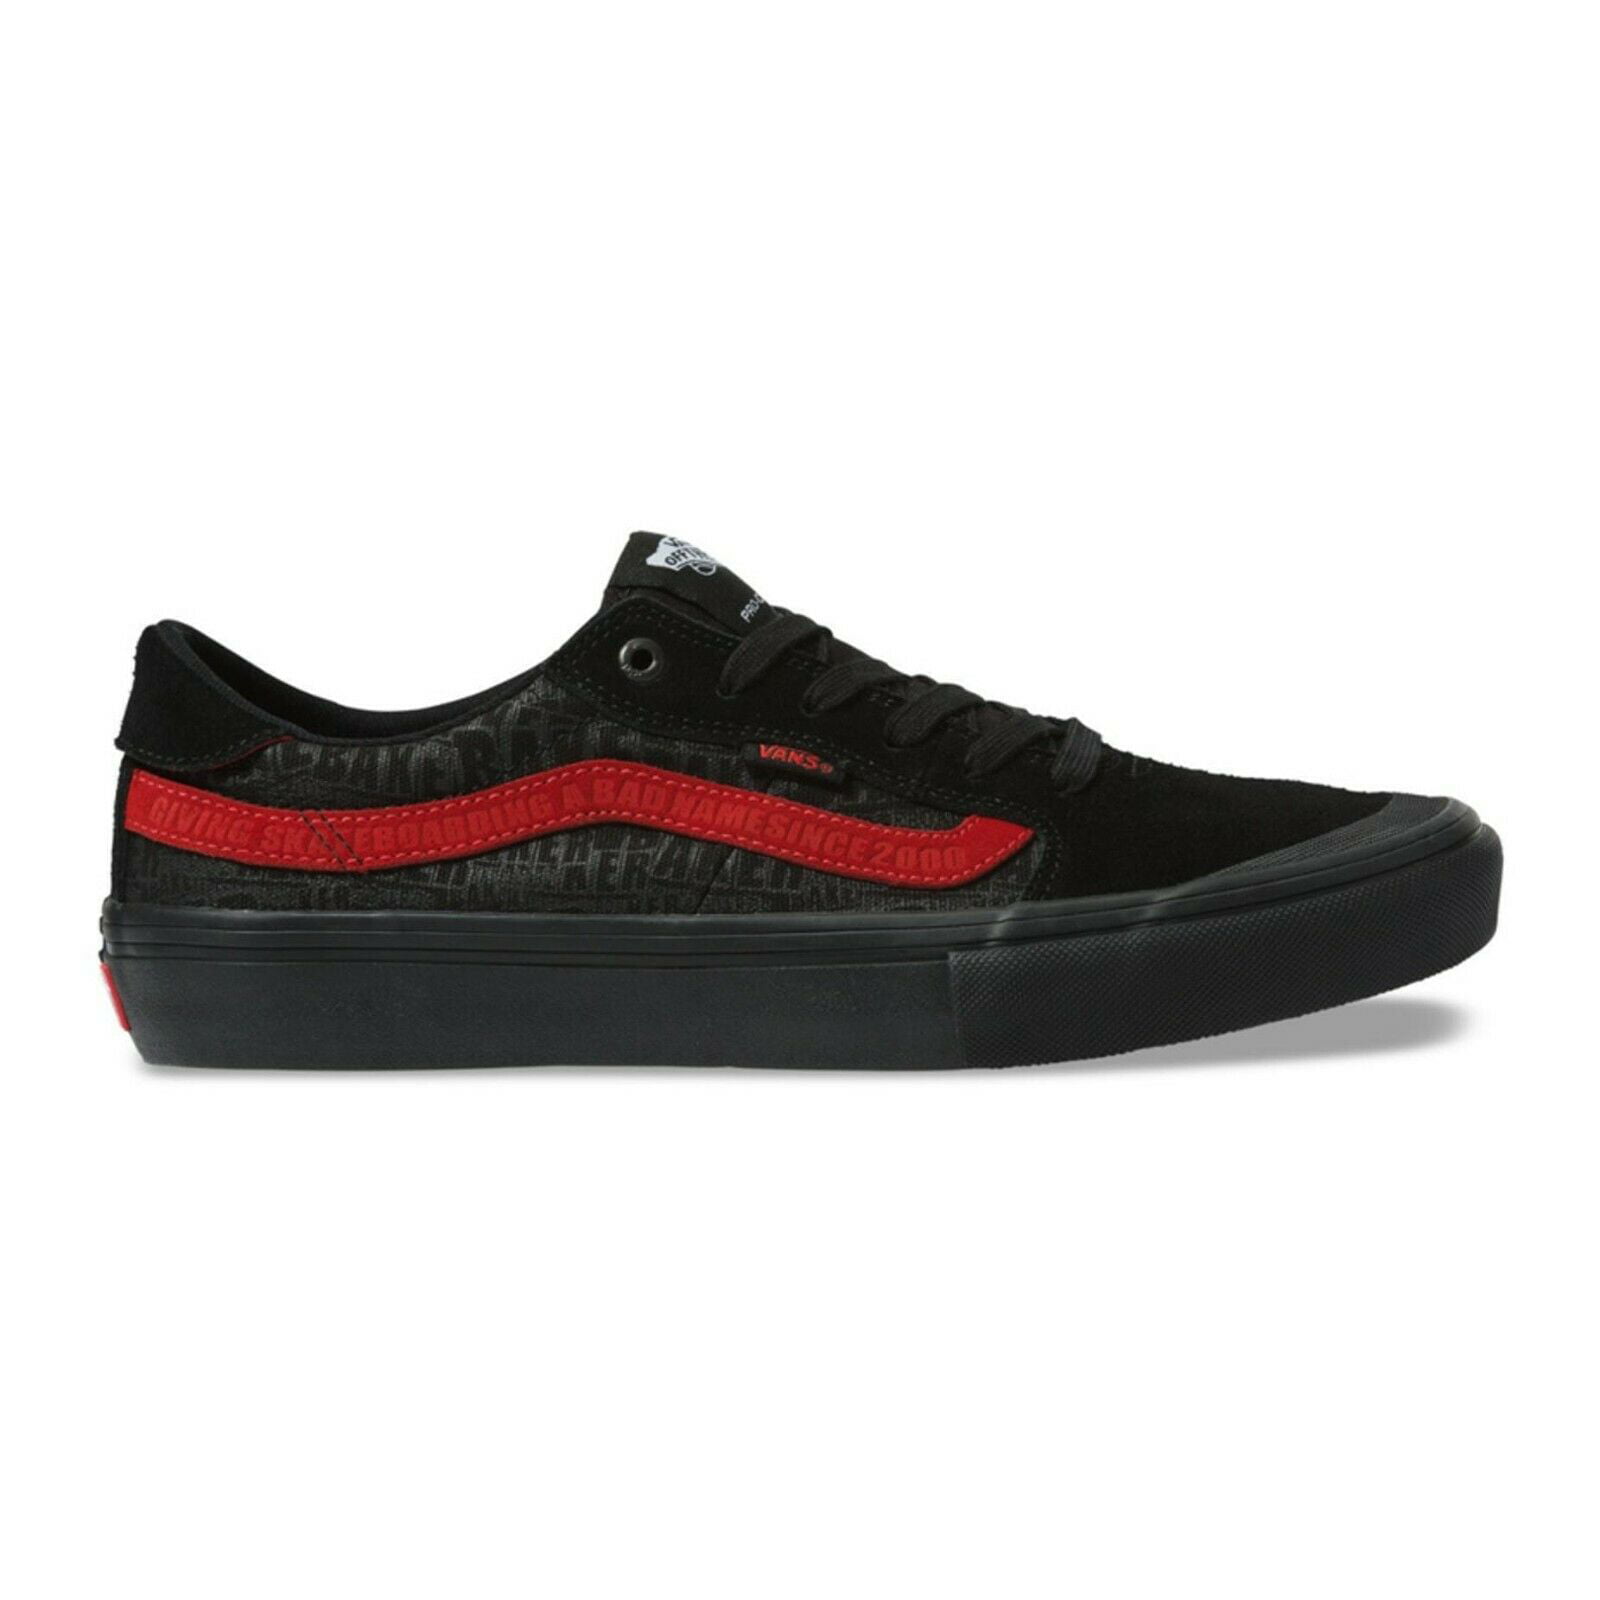 pindas Verdorie Monarchie Vans Style 112 Pro Baker Black/Black/Red Men's Classic Skate Shoes Size 8 -  Walmart.com